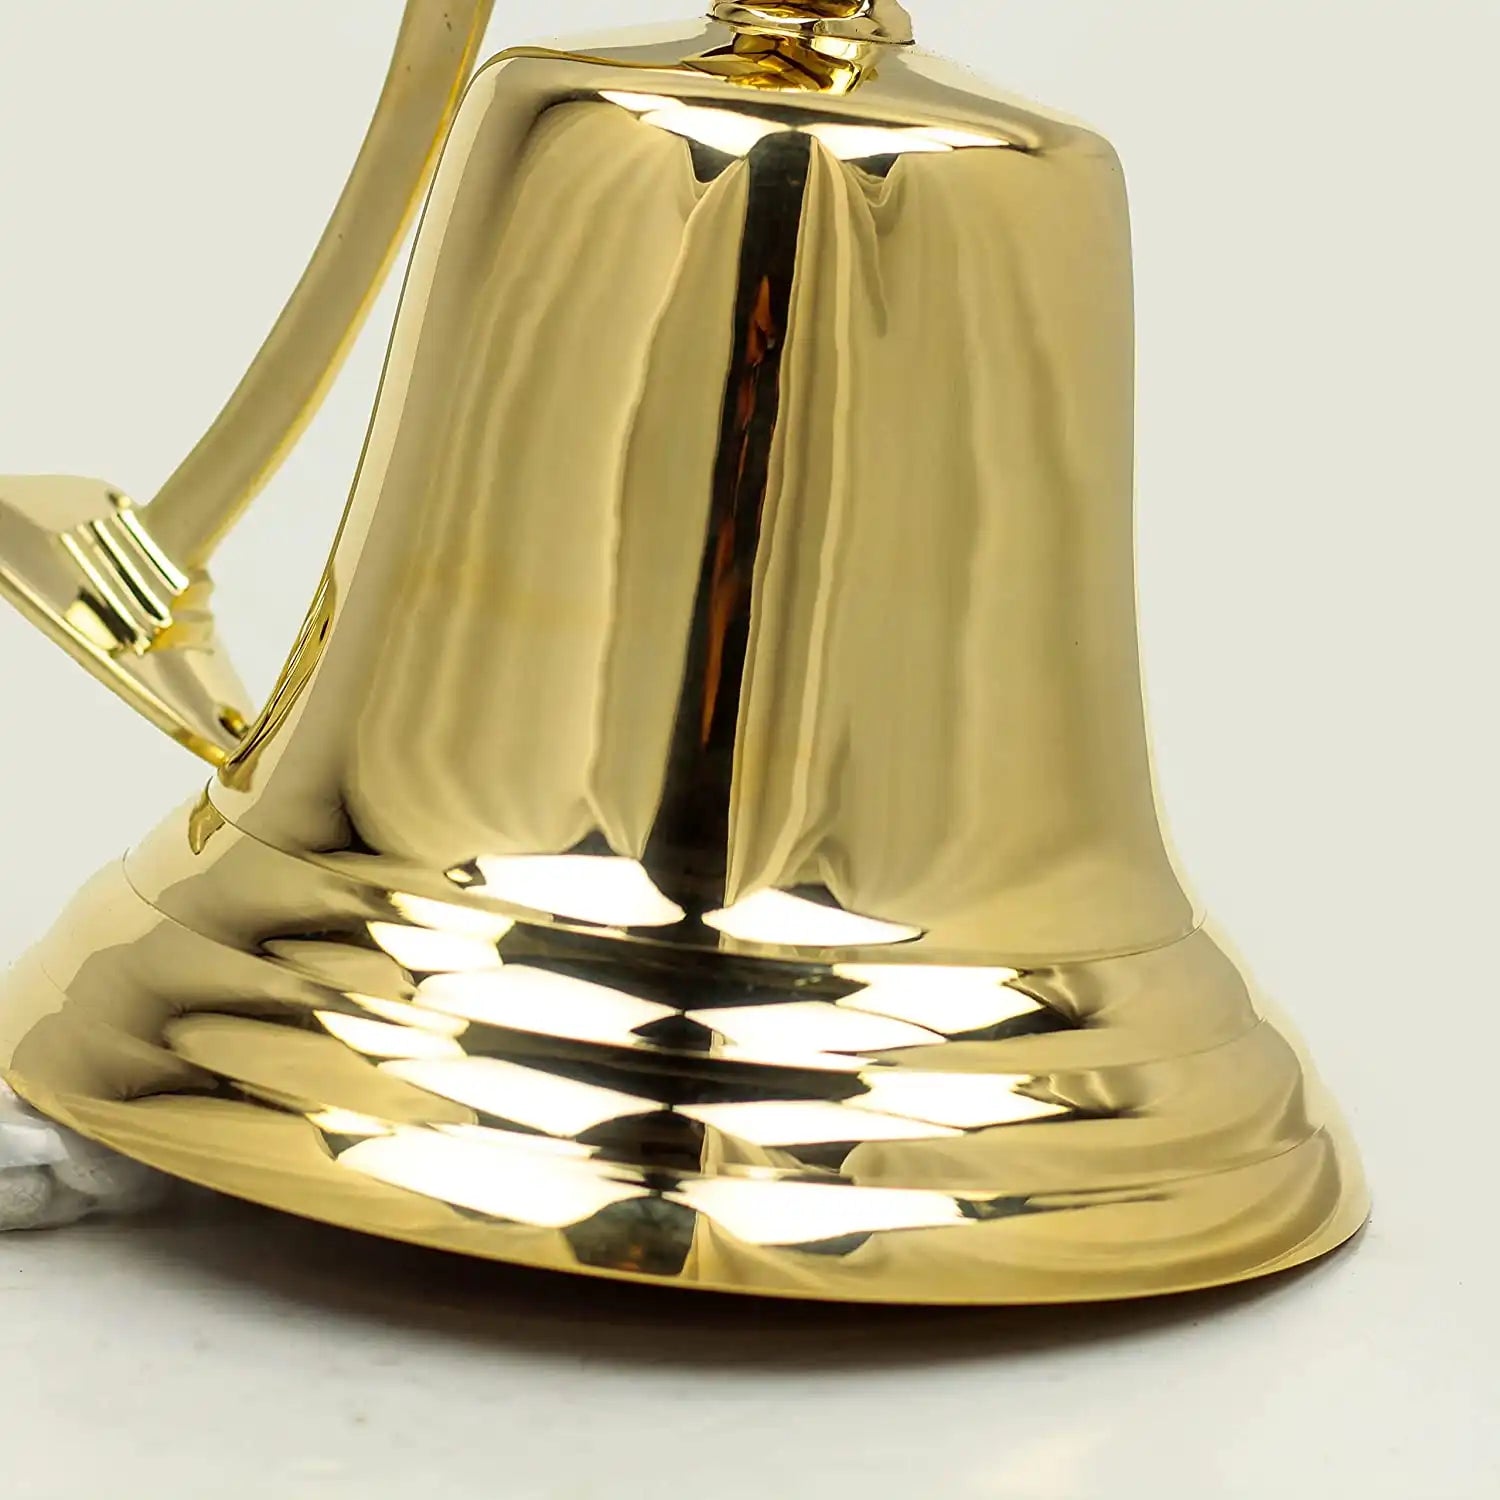 Brass Bell, Navy Bell, Mounted Bell, Bell on Bracket 